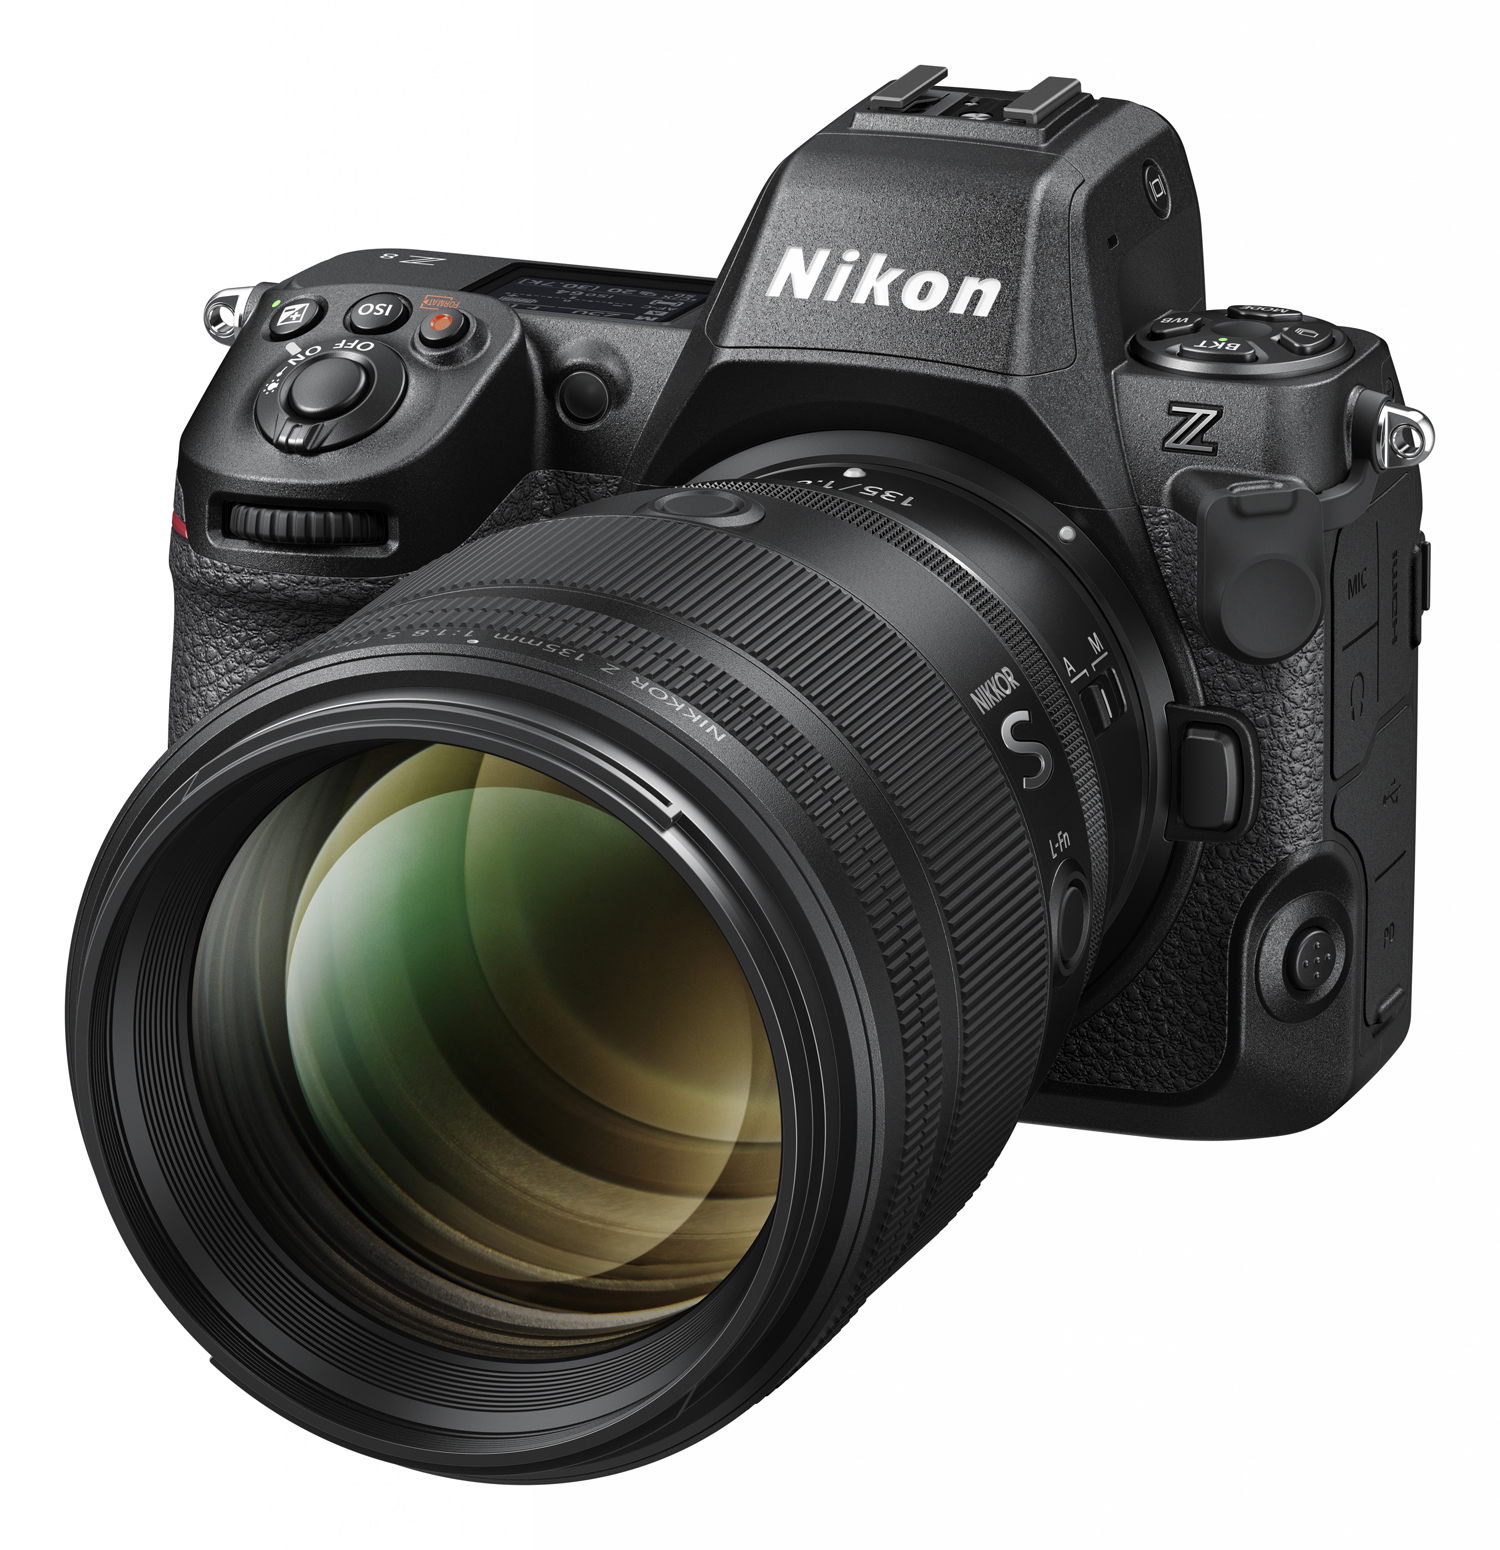 Nikkor Z 135 mm f/1.8 S Plena s fotoaparátem Nikon Z8.